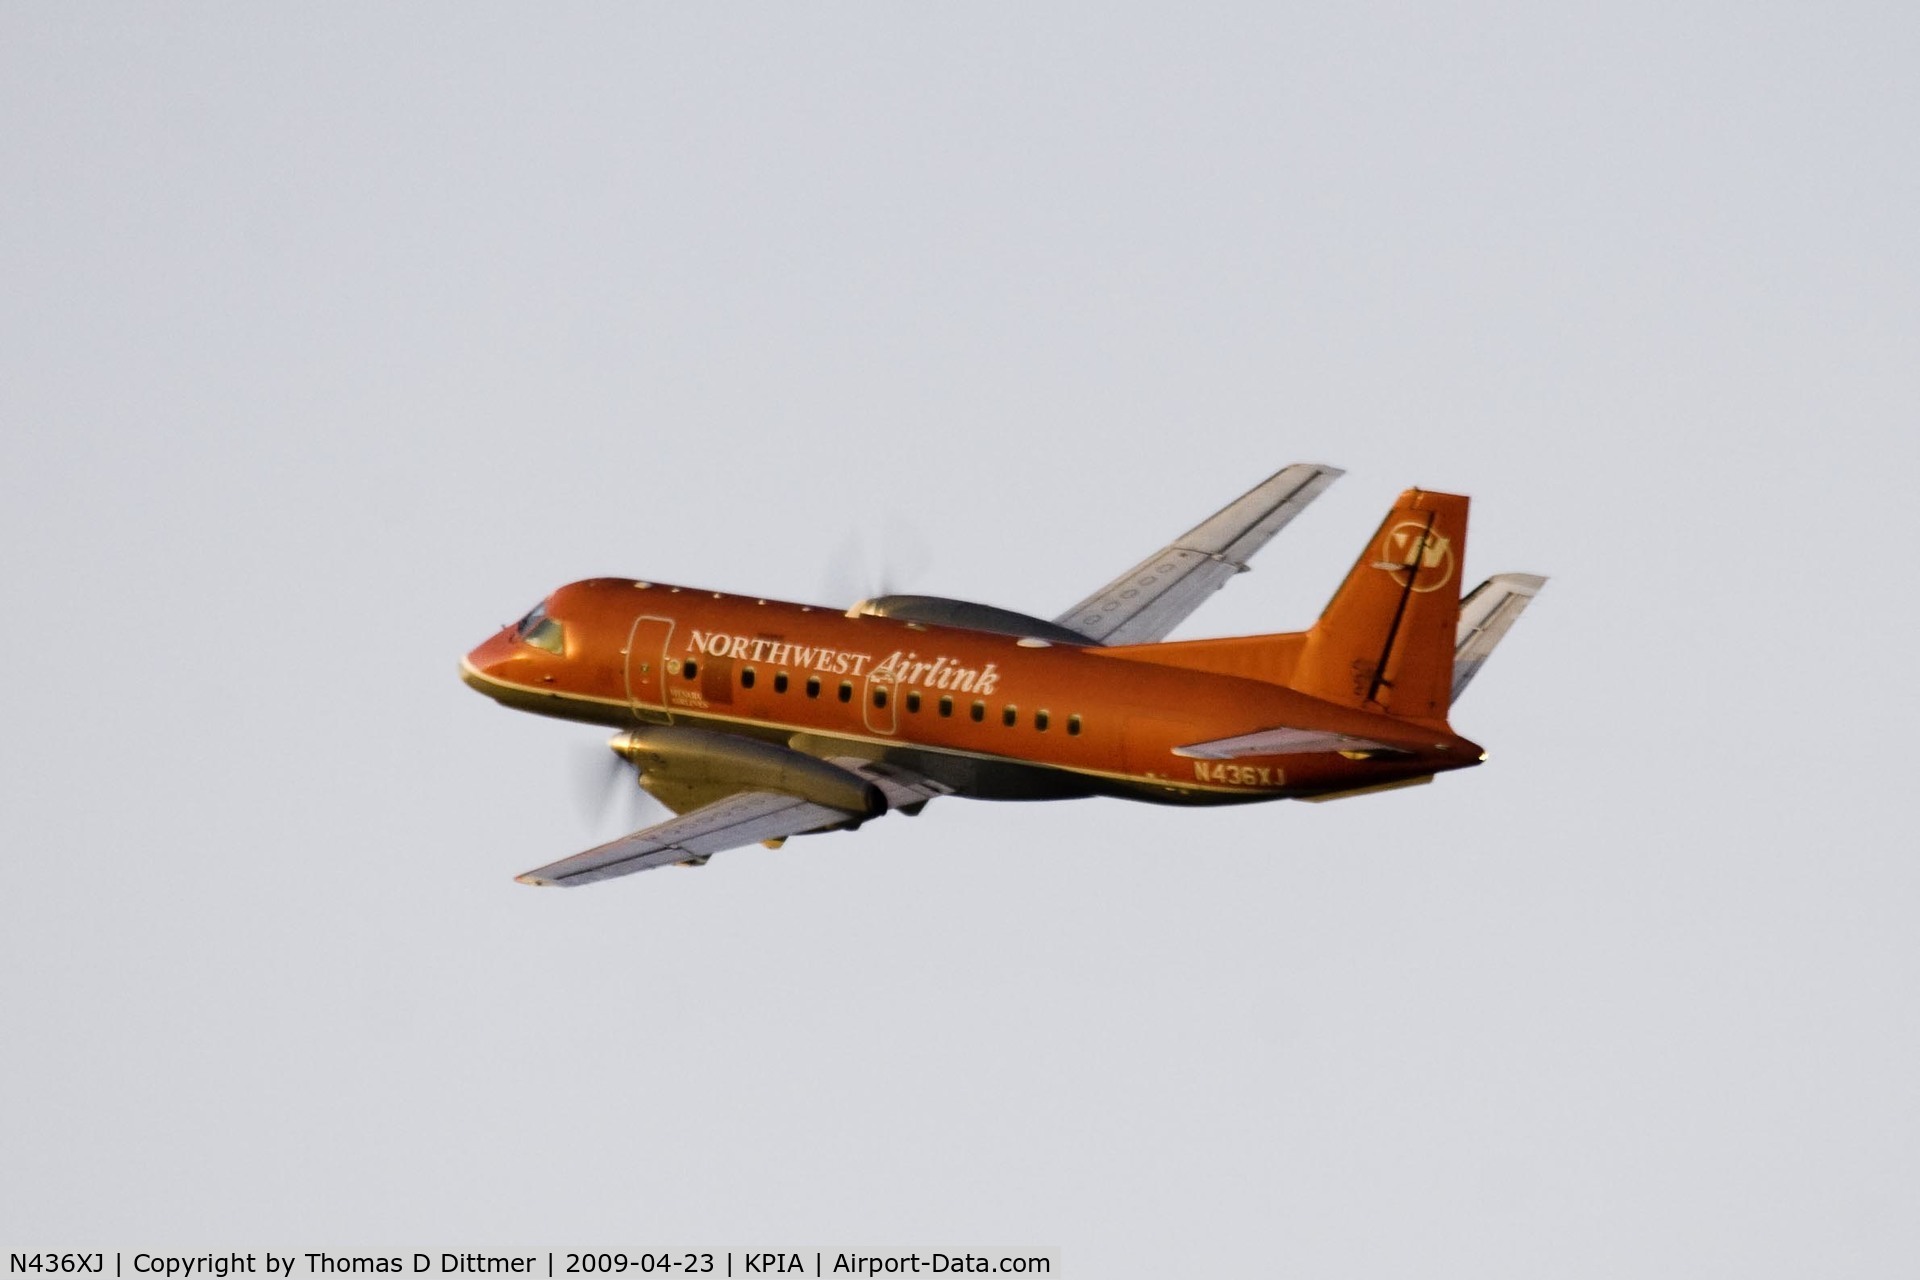 N436XJ, 1998 Saab 340B+ C/N 340B-436, Northwest Airlink (N436XJ) departs Peoria Illinois for Minneapolis